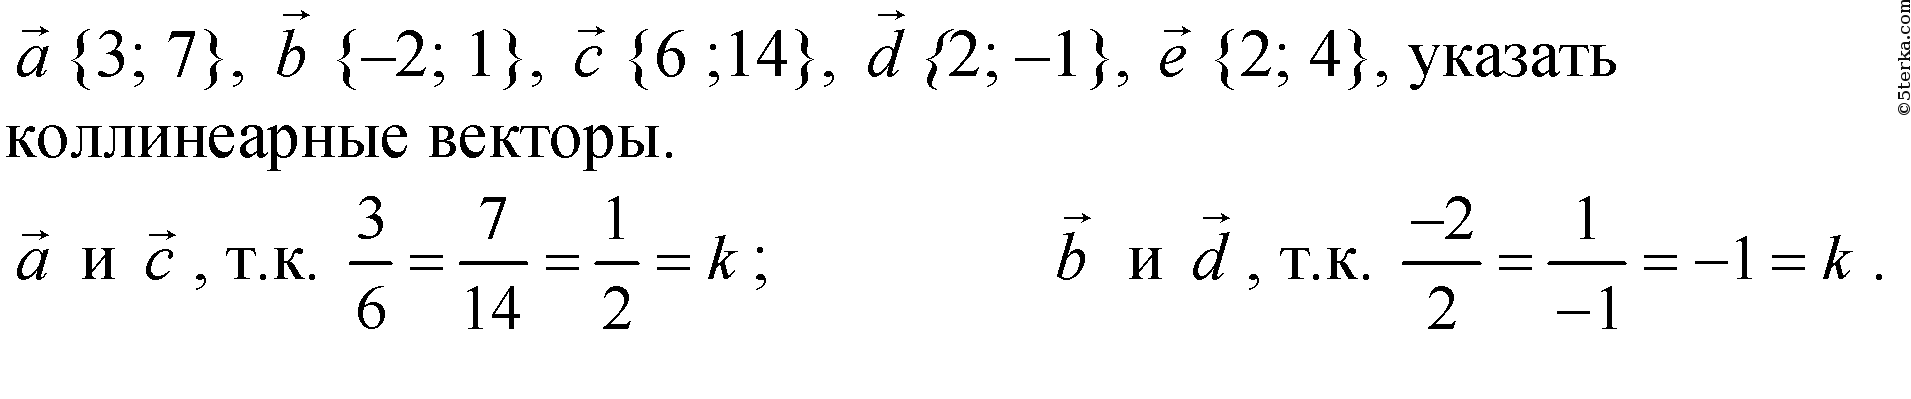 Даны векторы 3 5 4 6. Укажите пару коллинеарных векторов. 1+1=2 Вектор. 1 2 3 Вектор. Вектор 1 4 3.